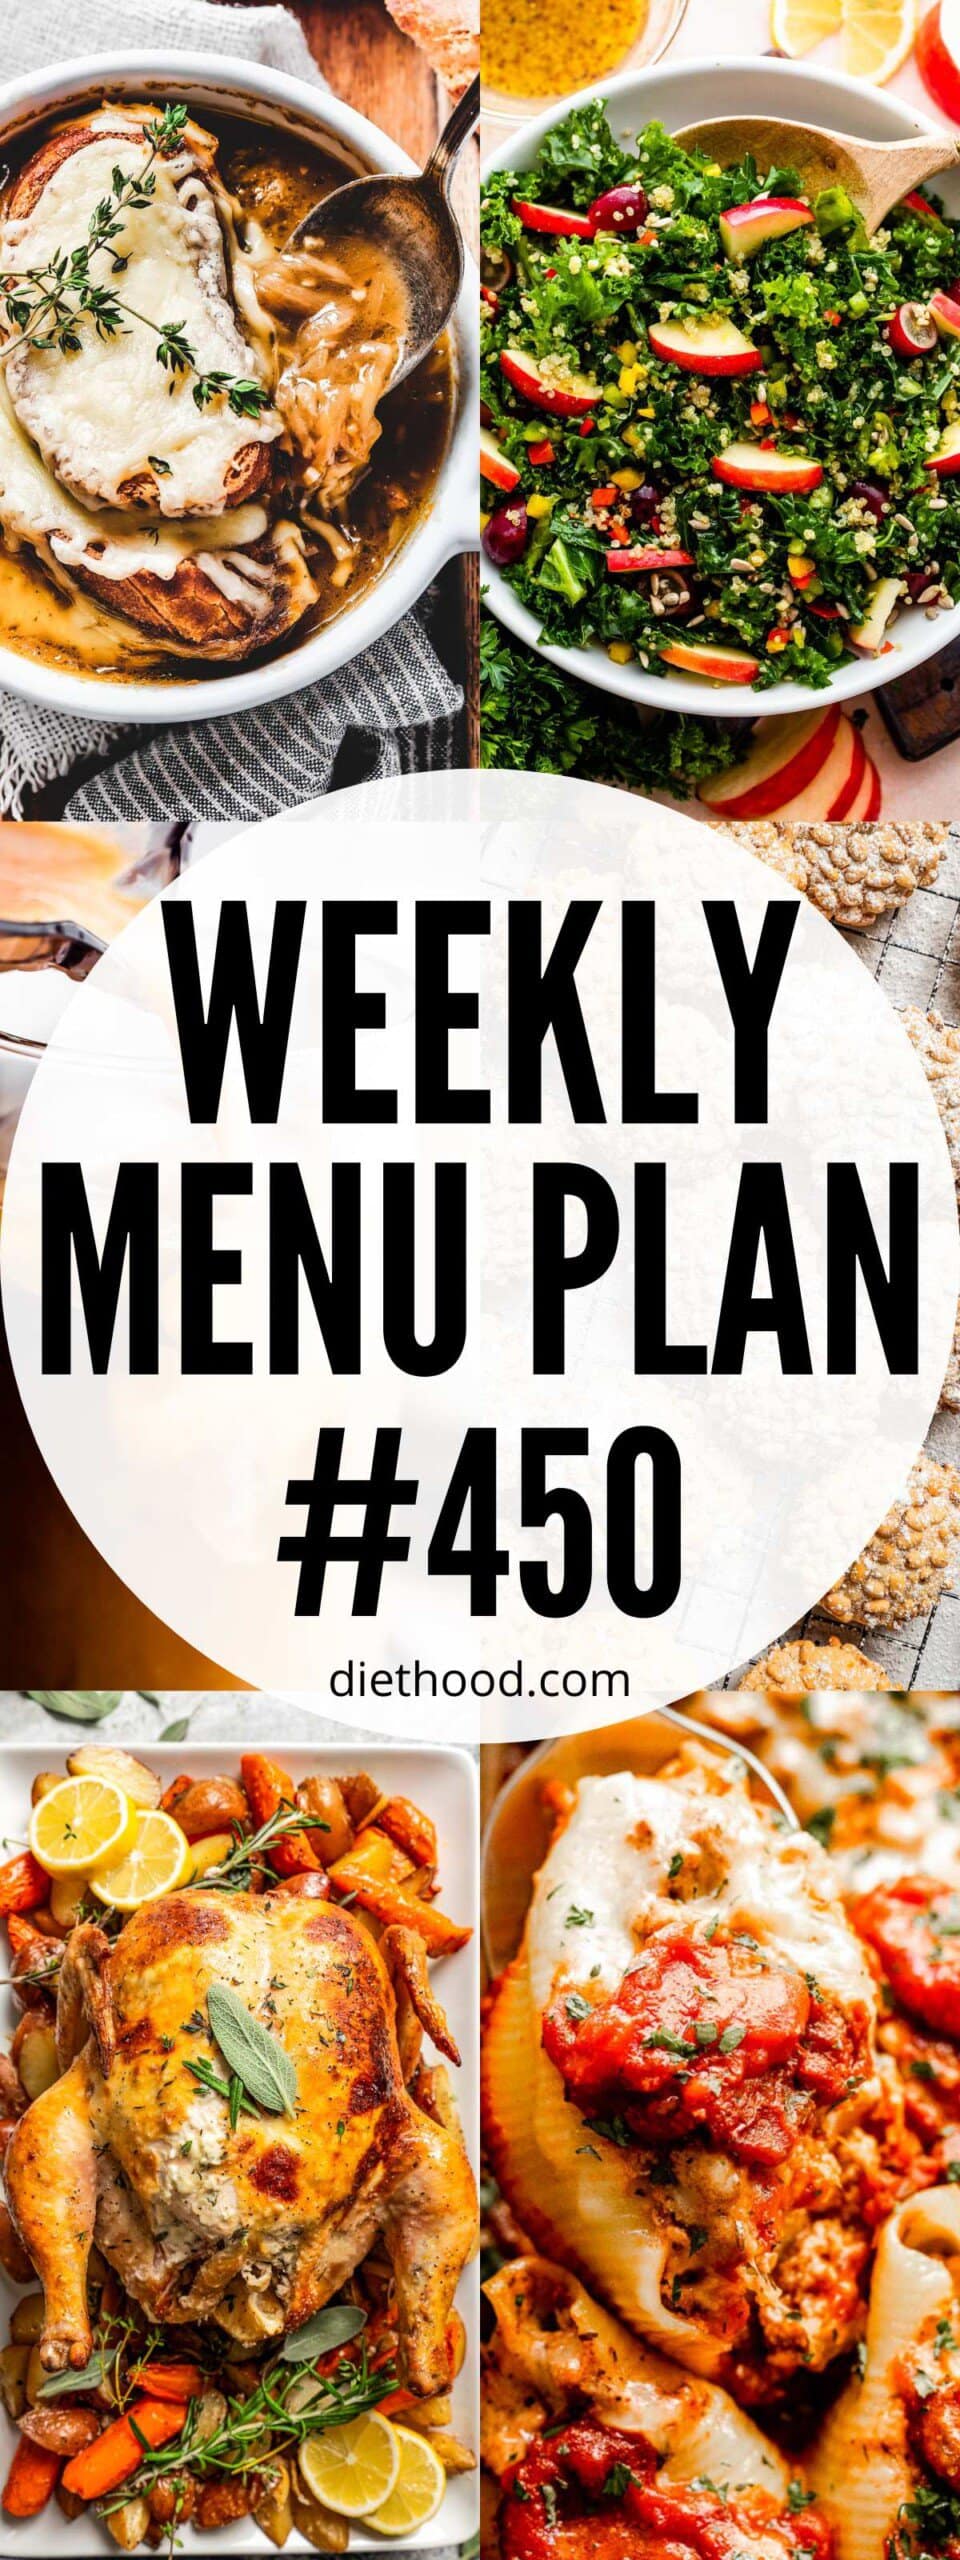 Weekly Menu Plan 450 six image collage Pinterest image.